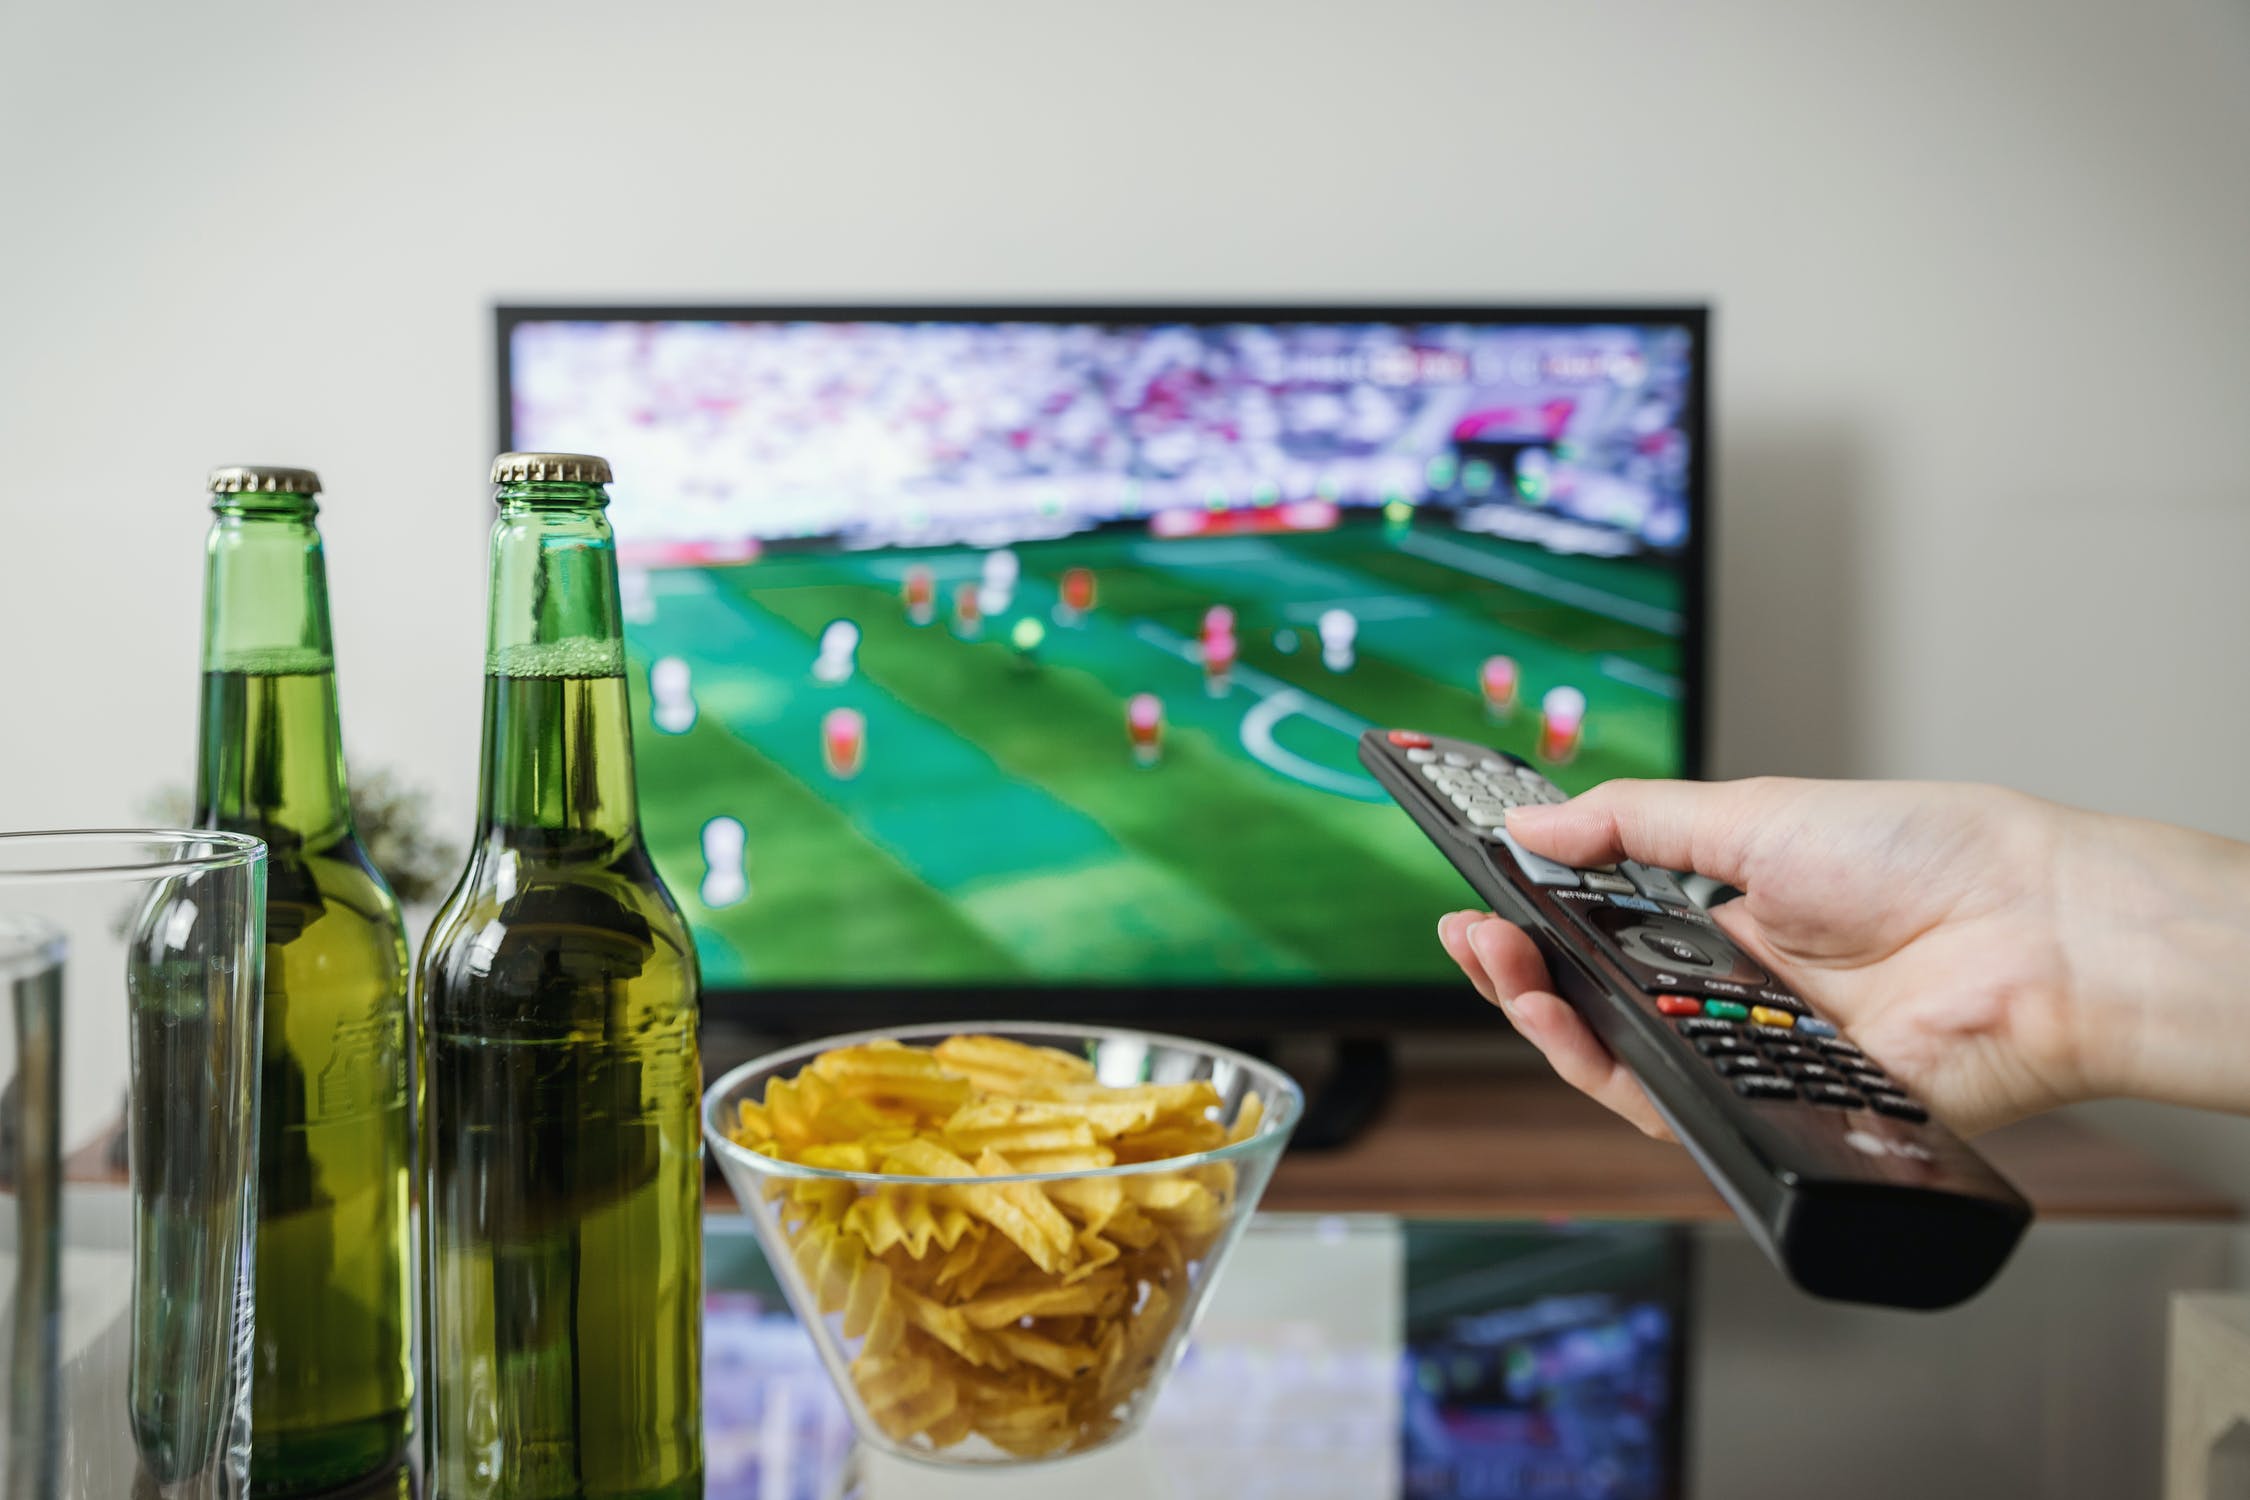 Persona disfrutando de la tele y algunos bocadillos y bebidas. | Foto: Shutterstock